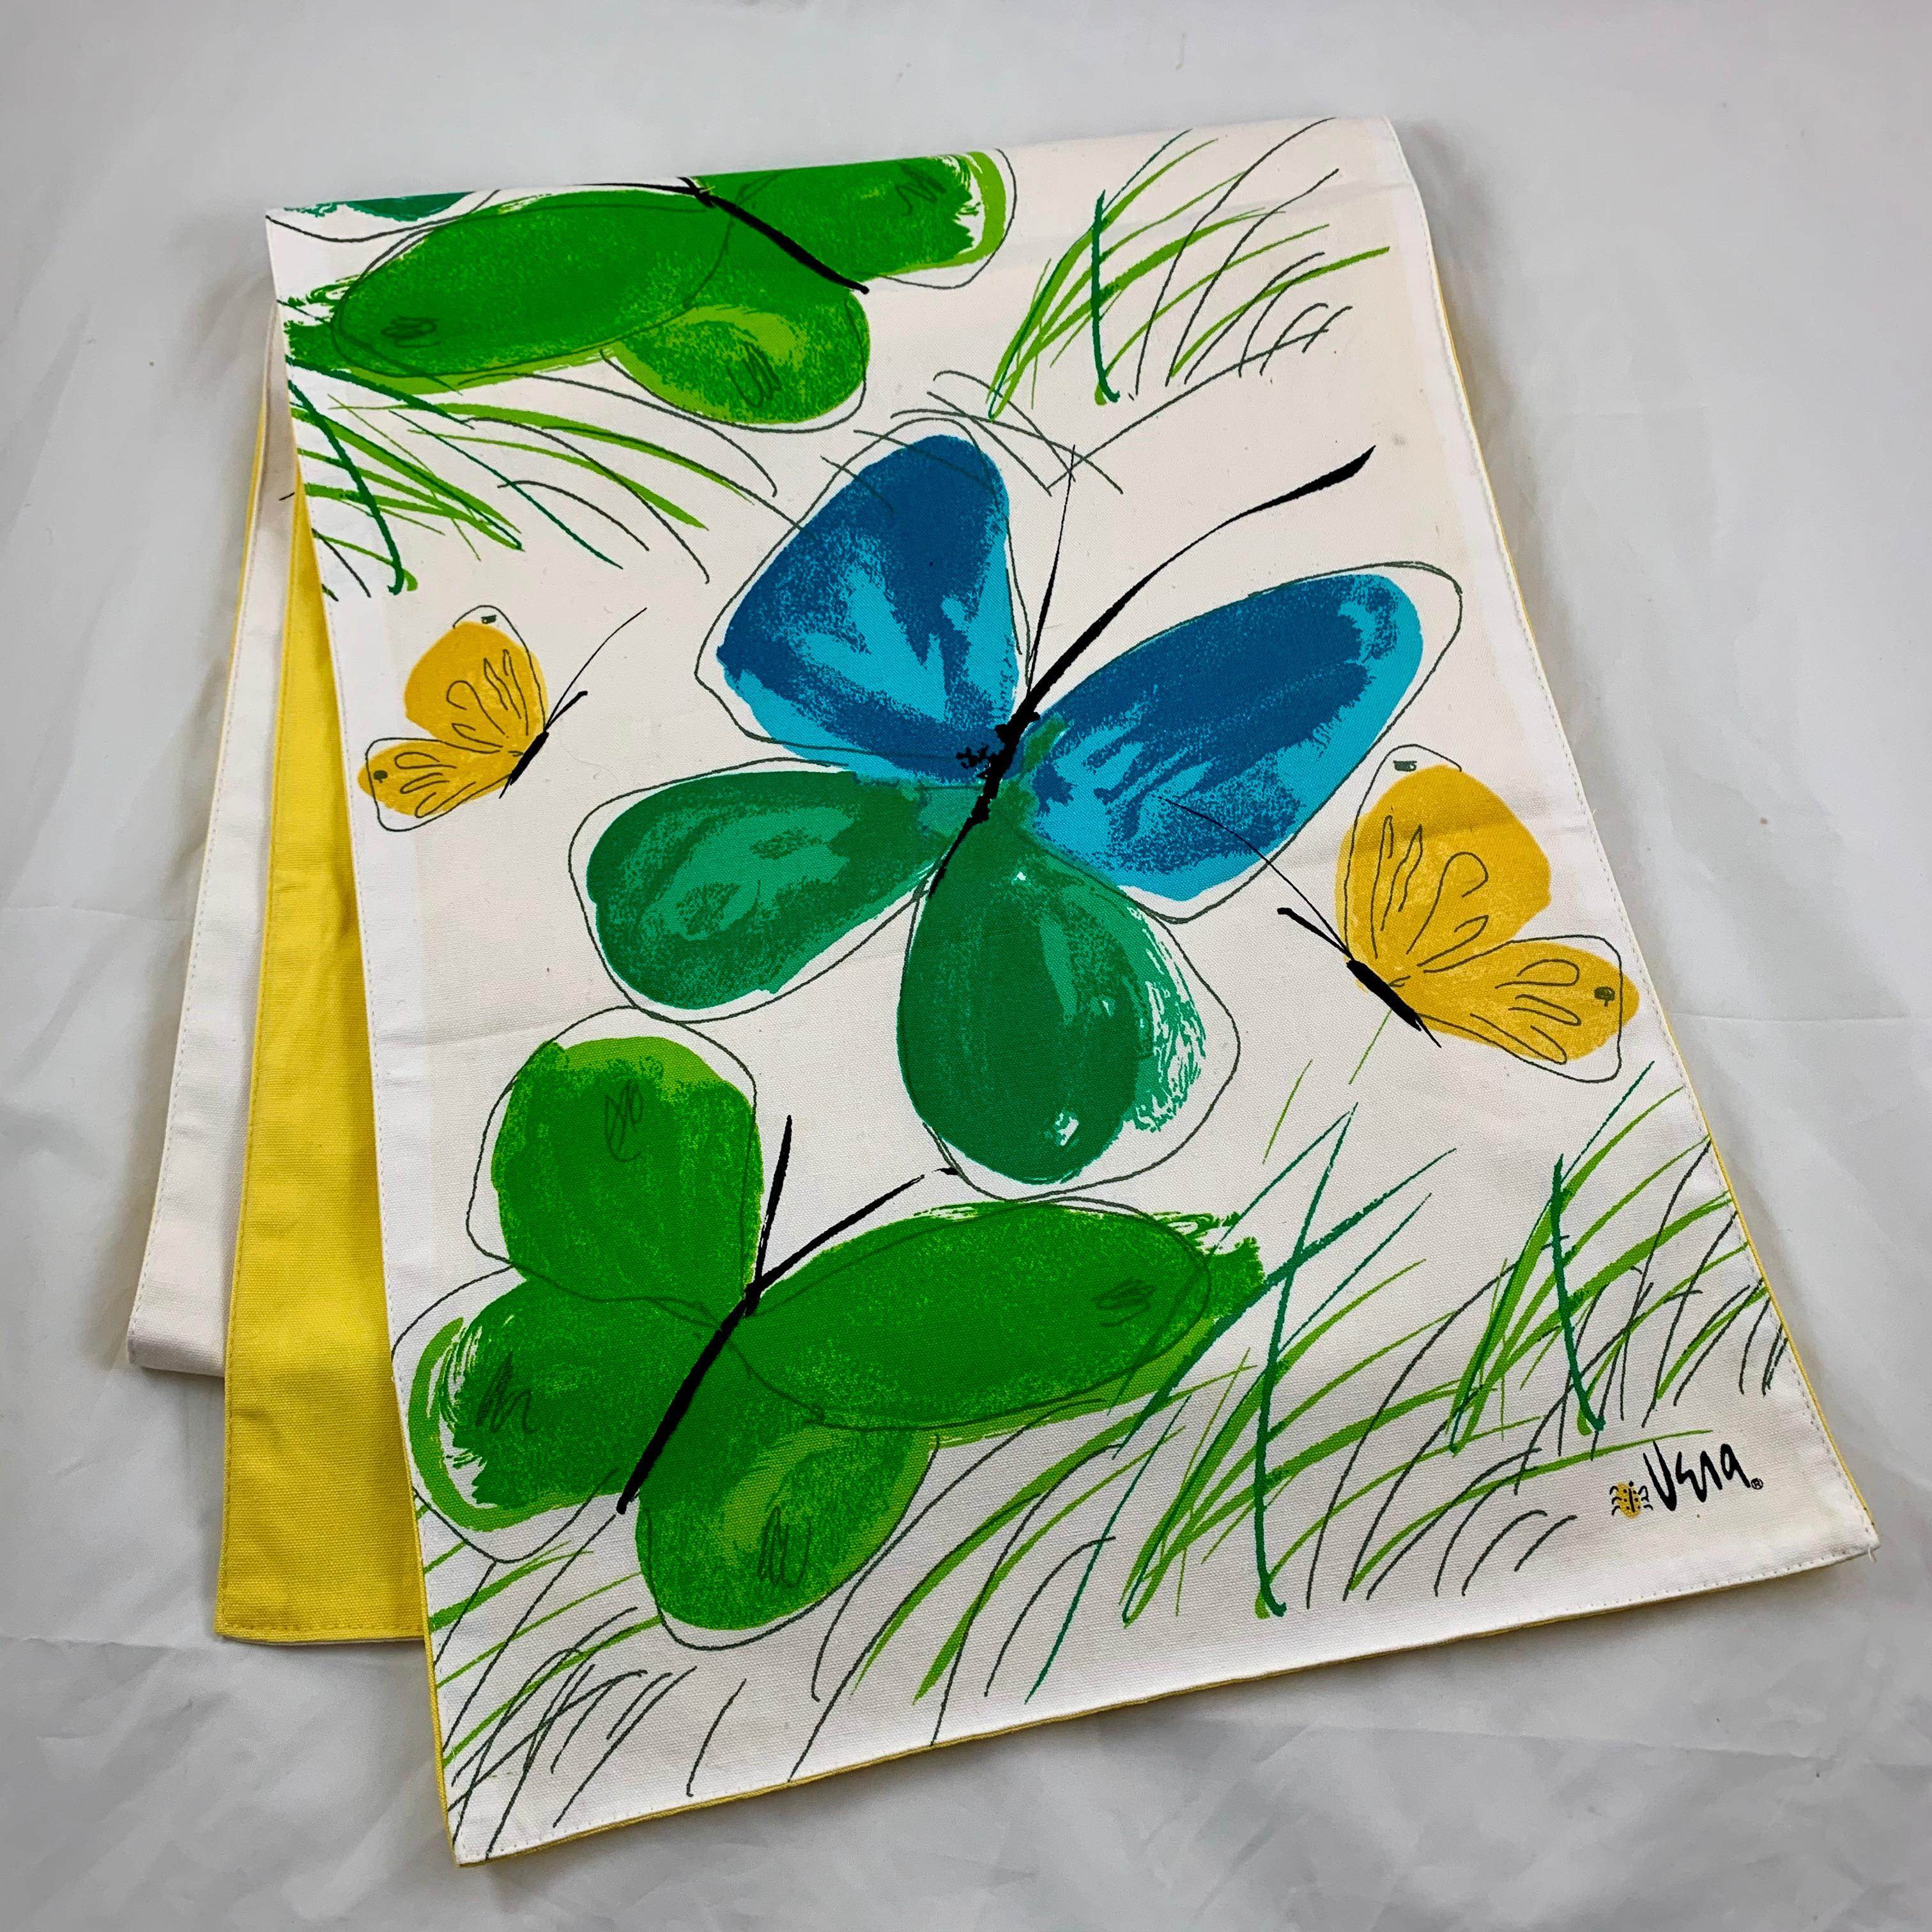 Dyed Vera Neumann Mid-Century Modern Era Butterflies & Grass Table Runner & Mats S/3